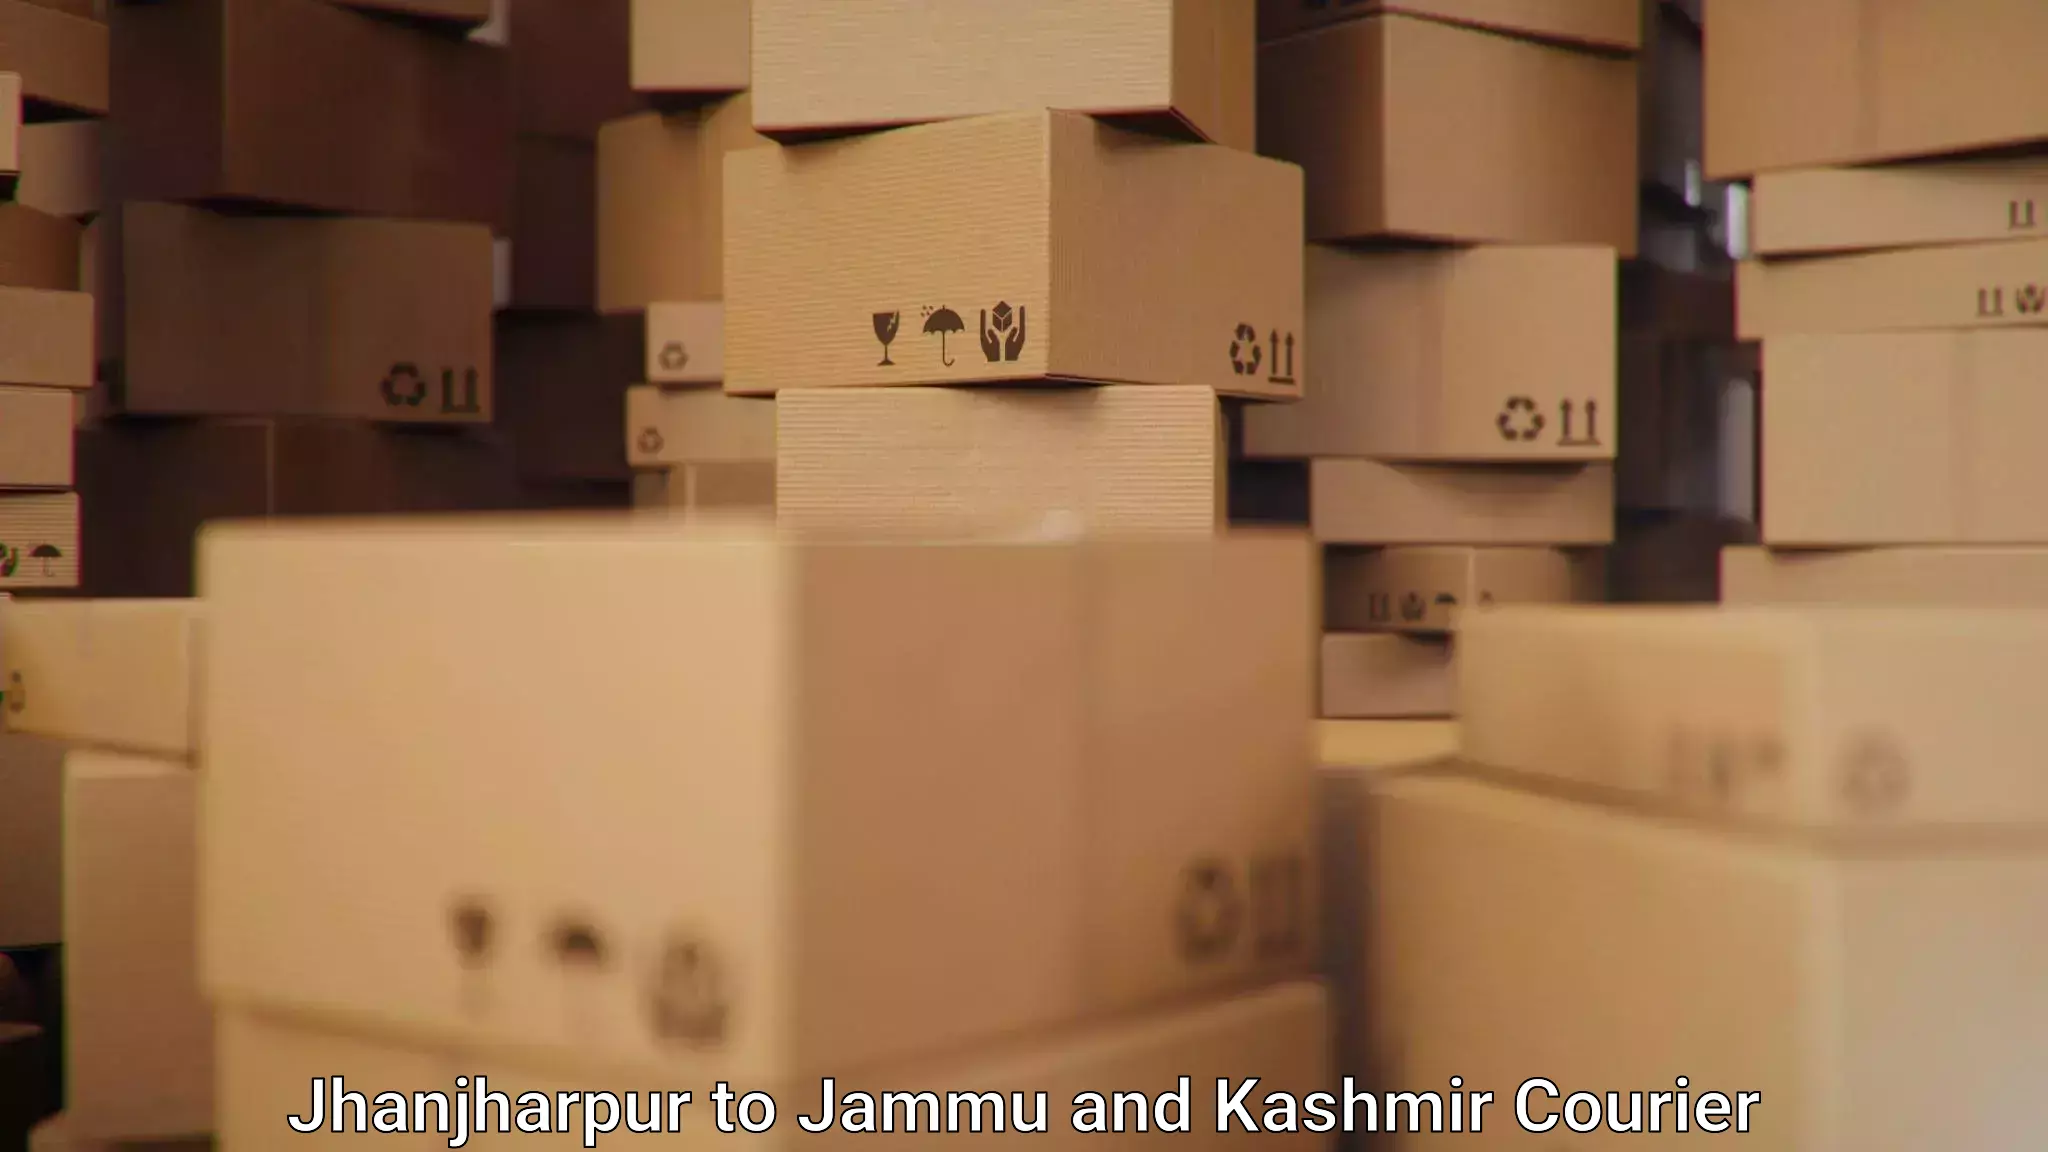 Logistics service provider Jhanjharpur to Rajouri